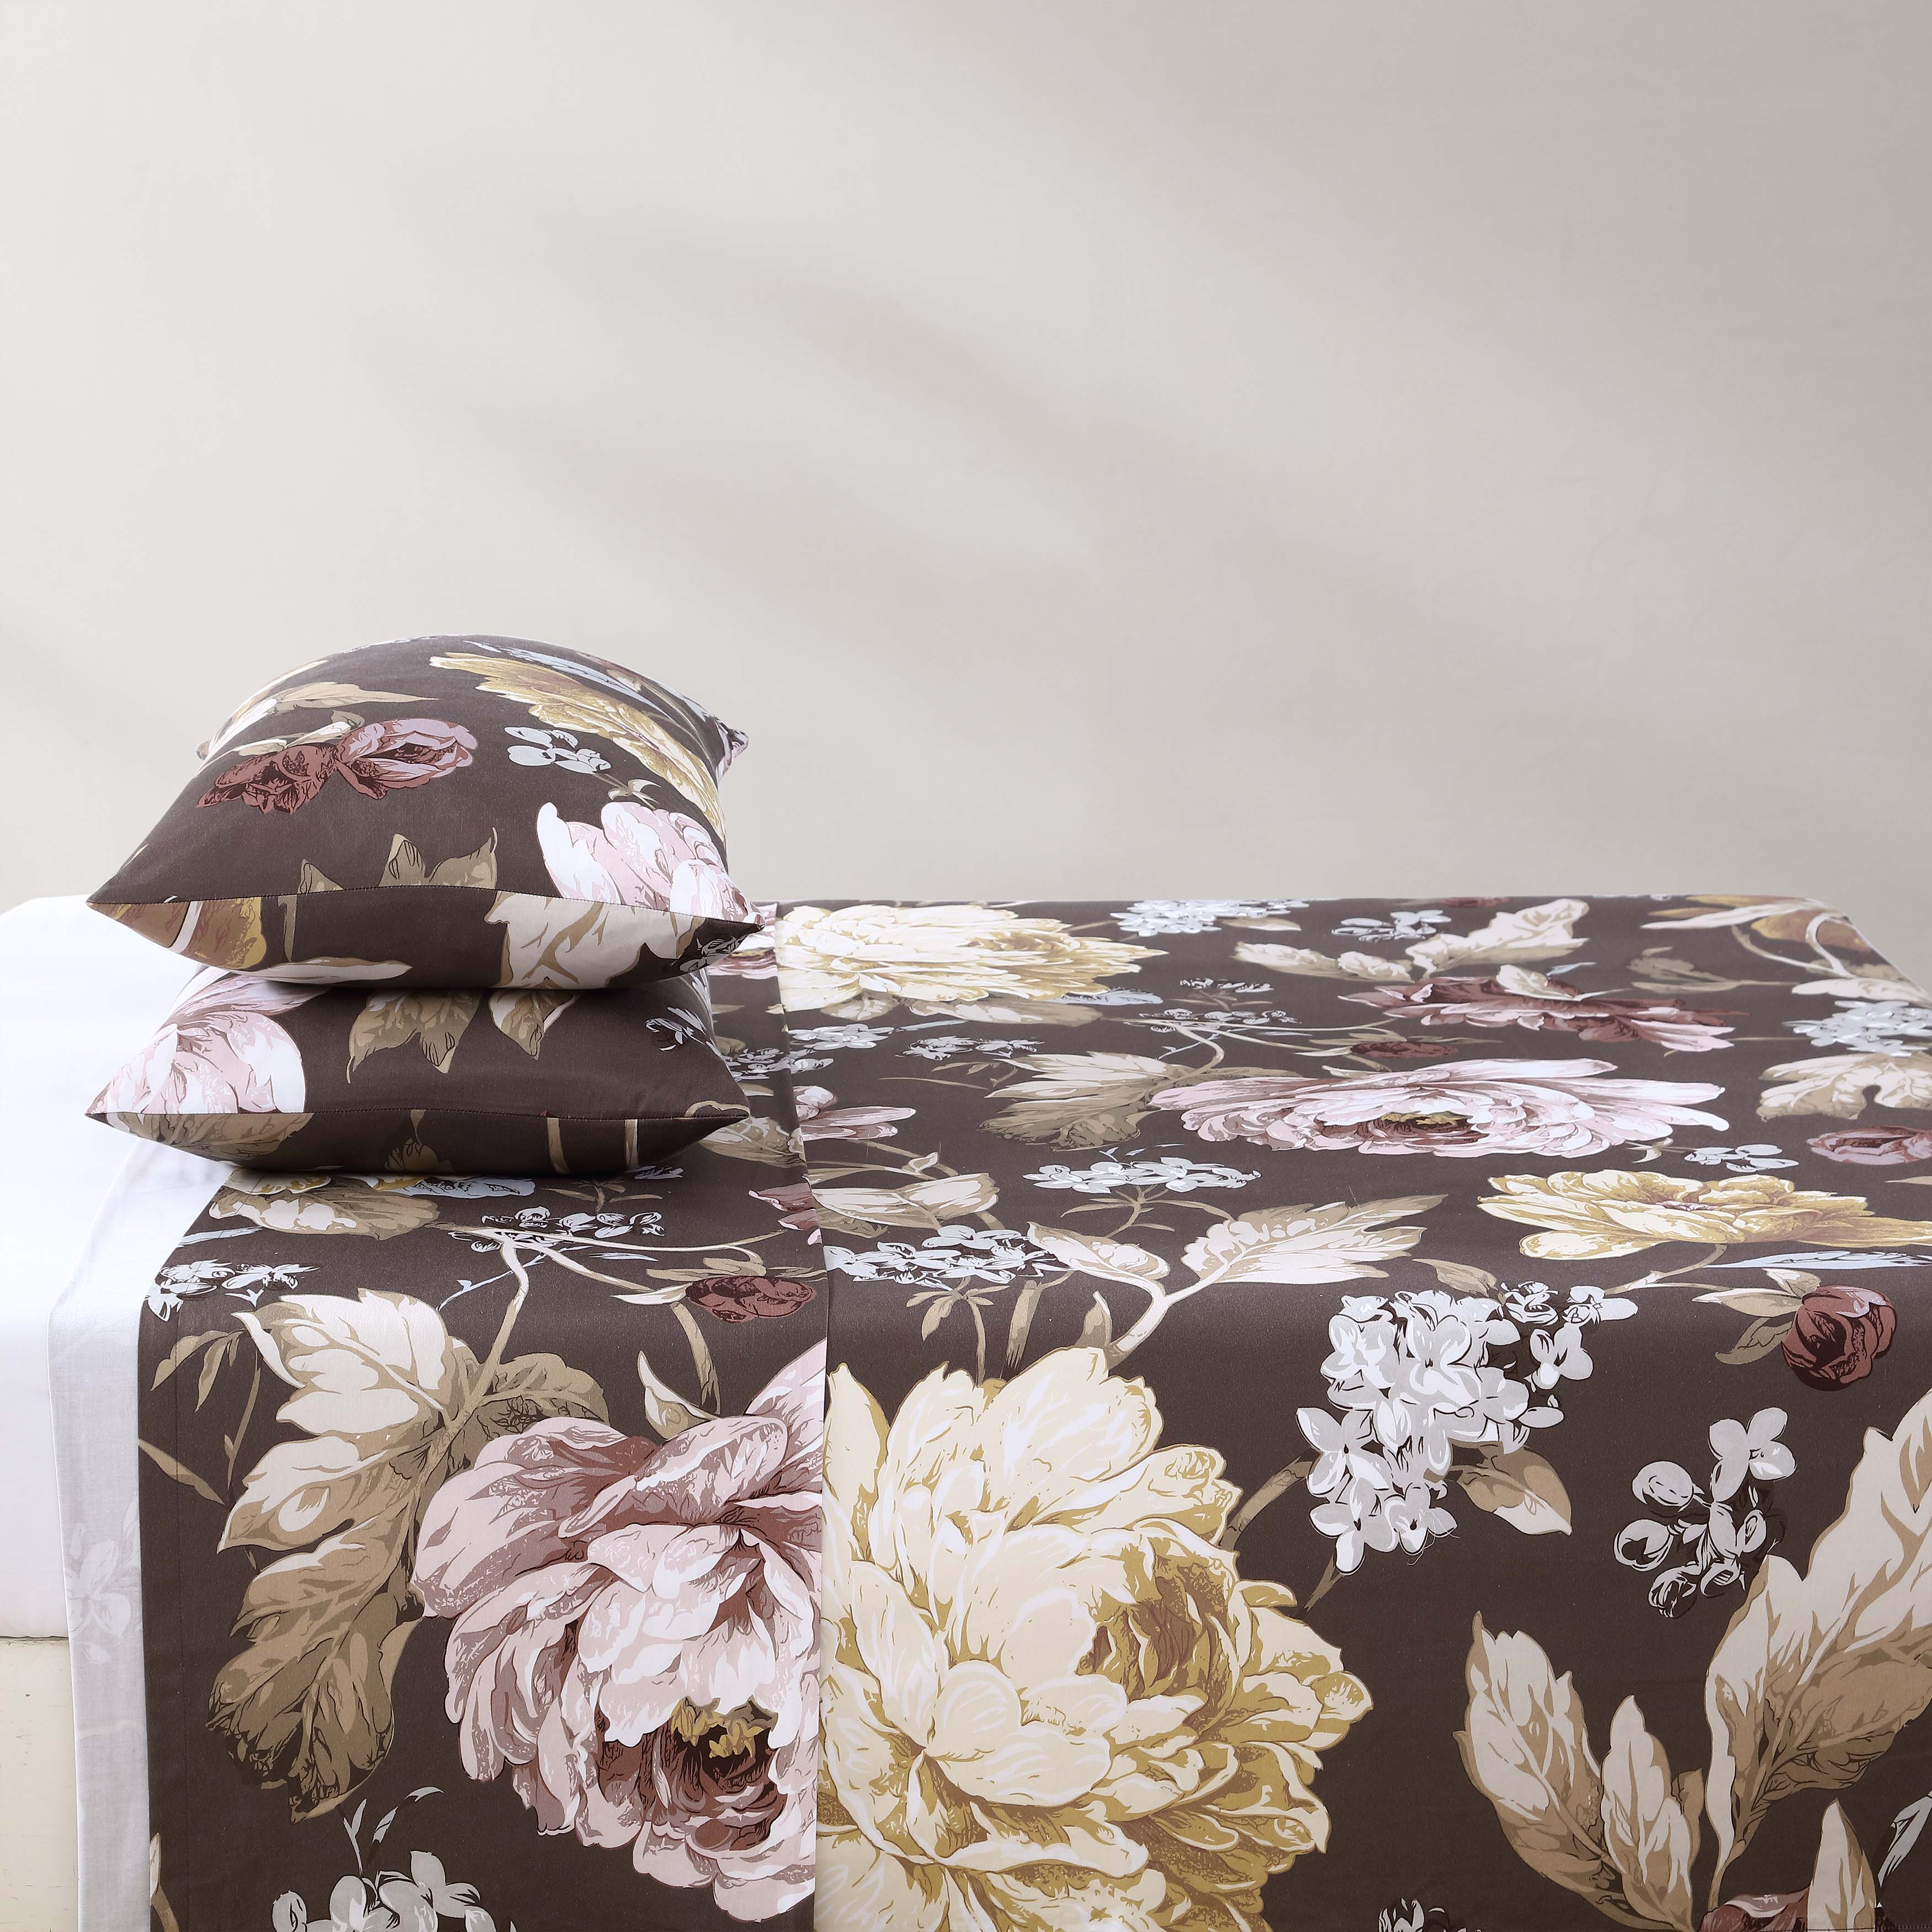 Floral Garden Mocha 100% Cotton Sateen 3 Piece Bed Sheet Set